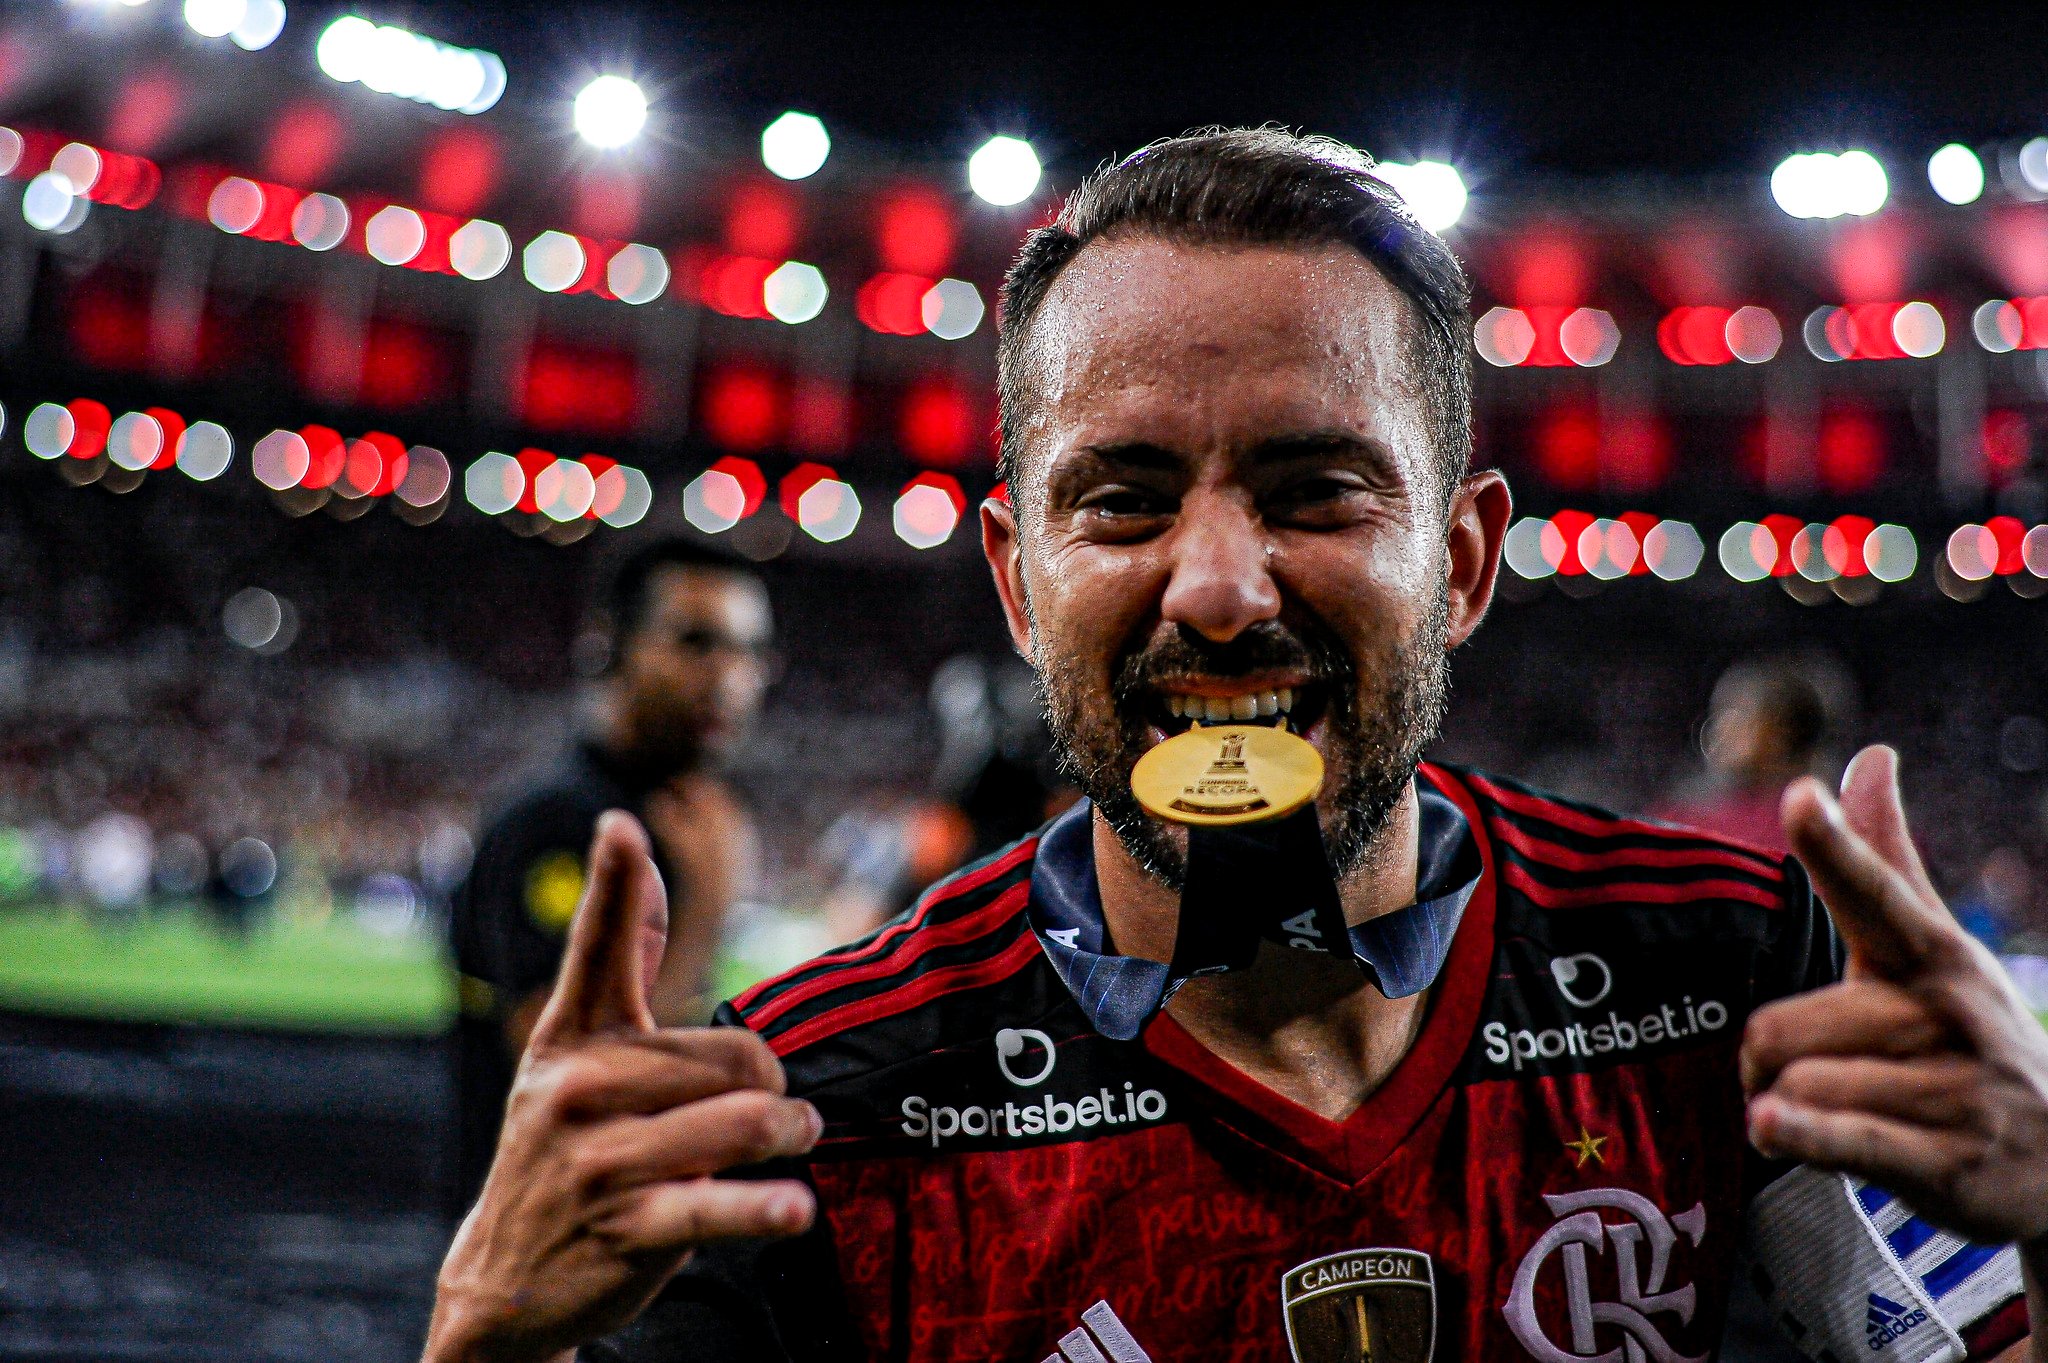 28º - Everton Ribeiro, meio-campista, Flamengo (8 milhões de euros)